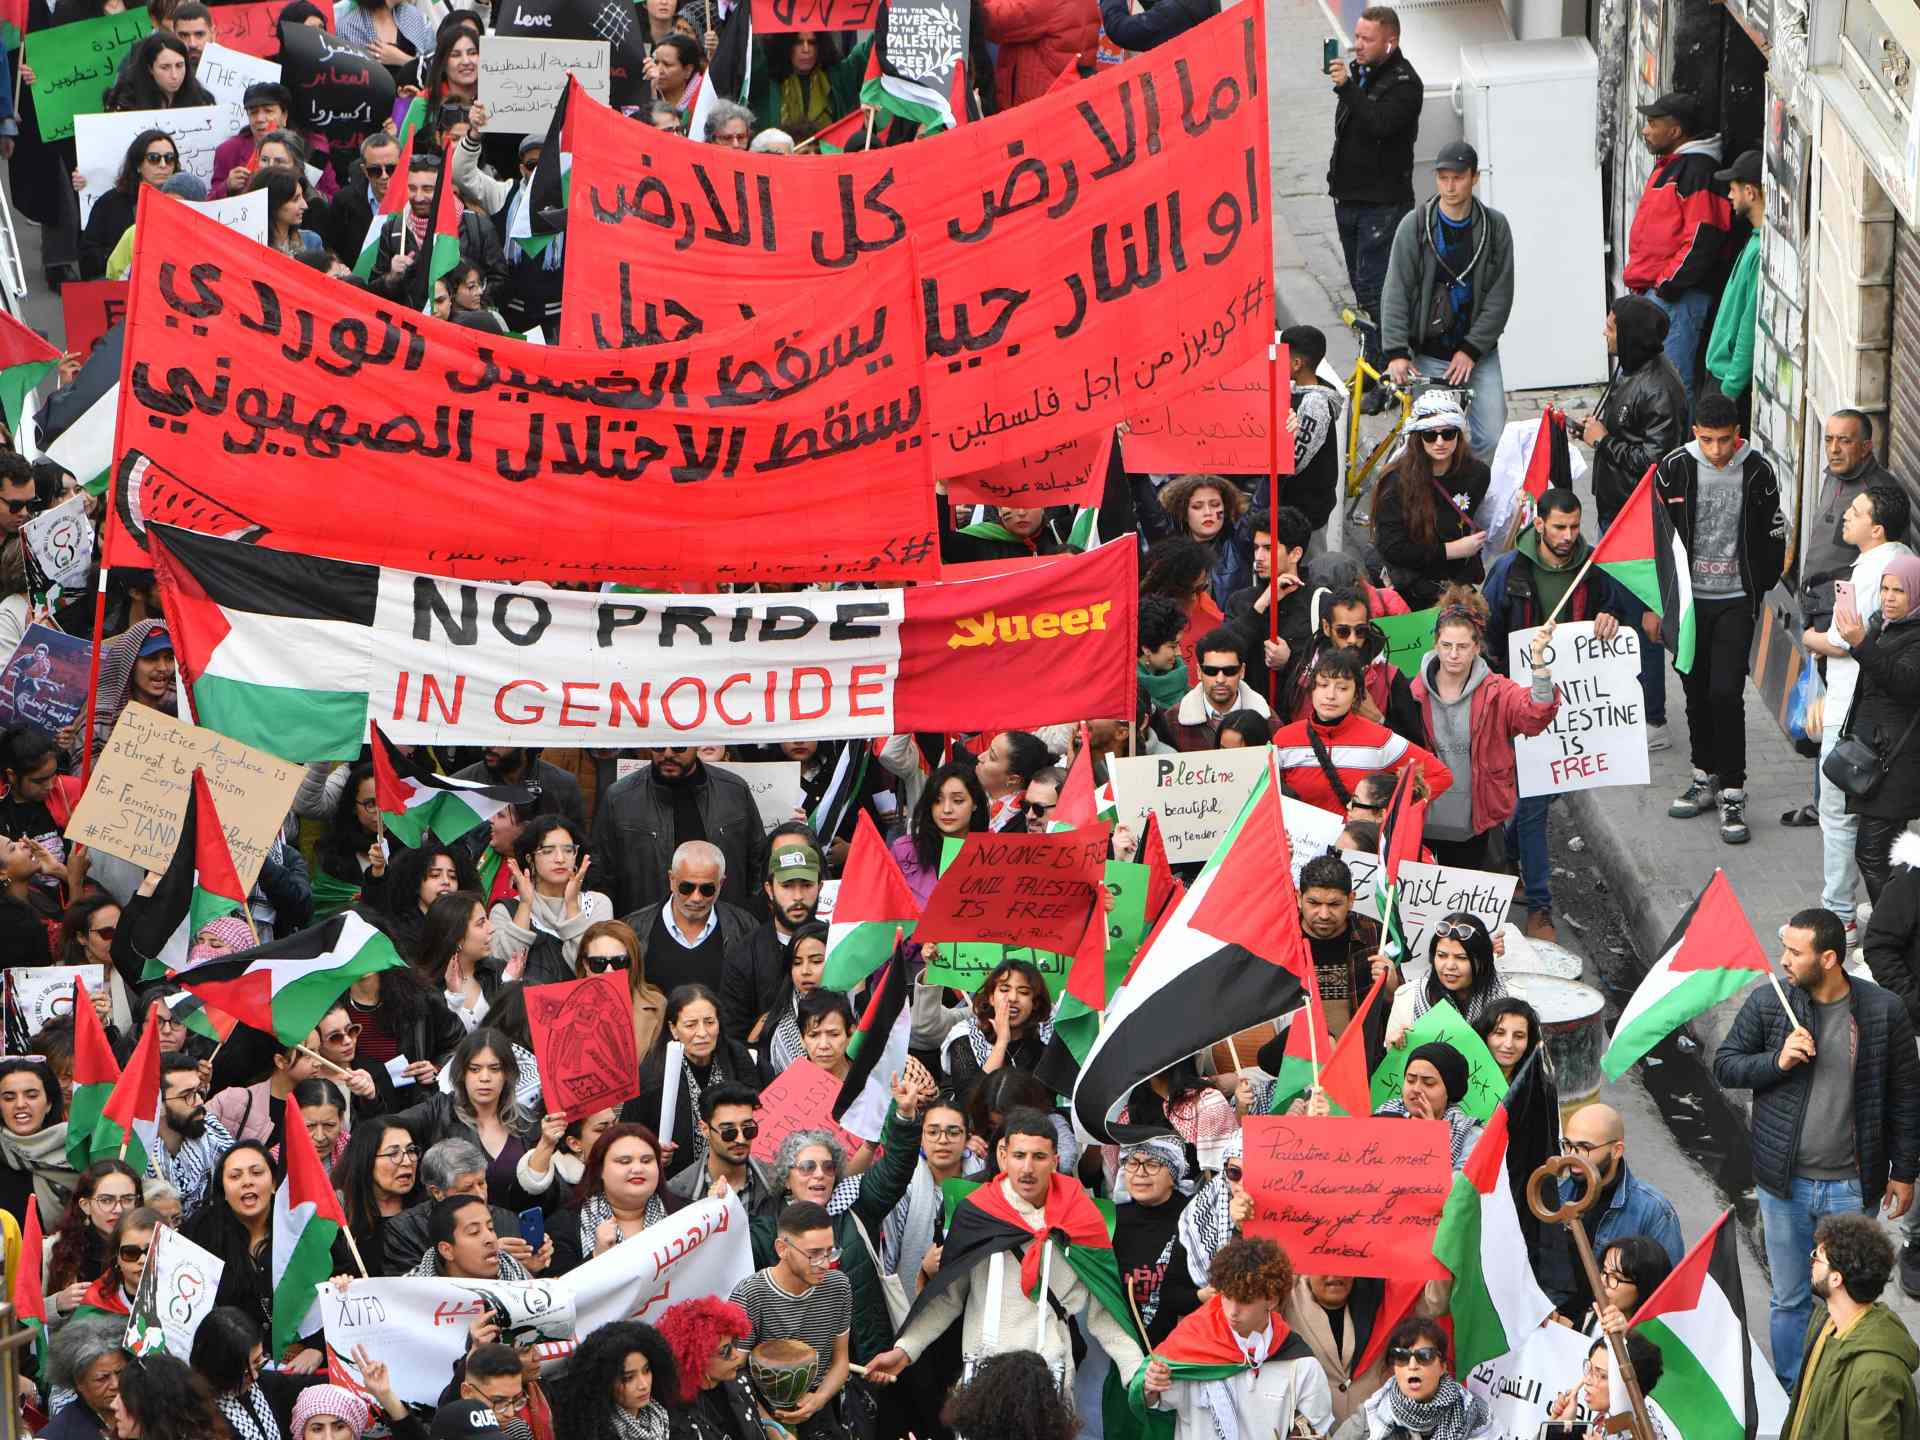 مظاهرات عبر العالم نصرة لفلسطين | أخبار – البوكس نيوز